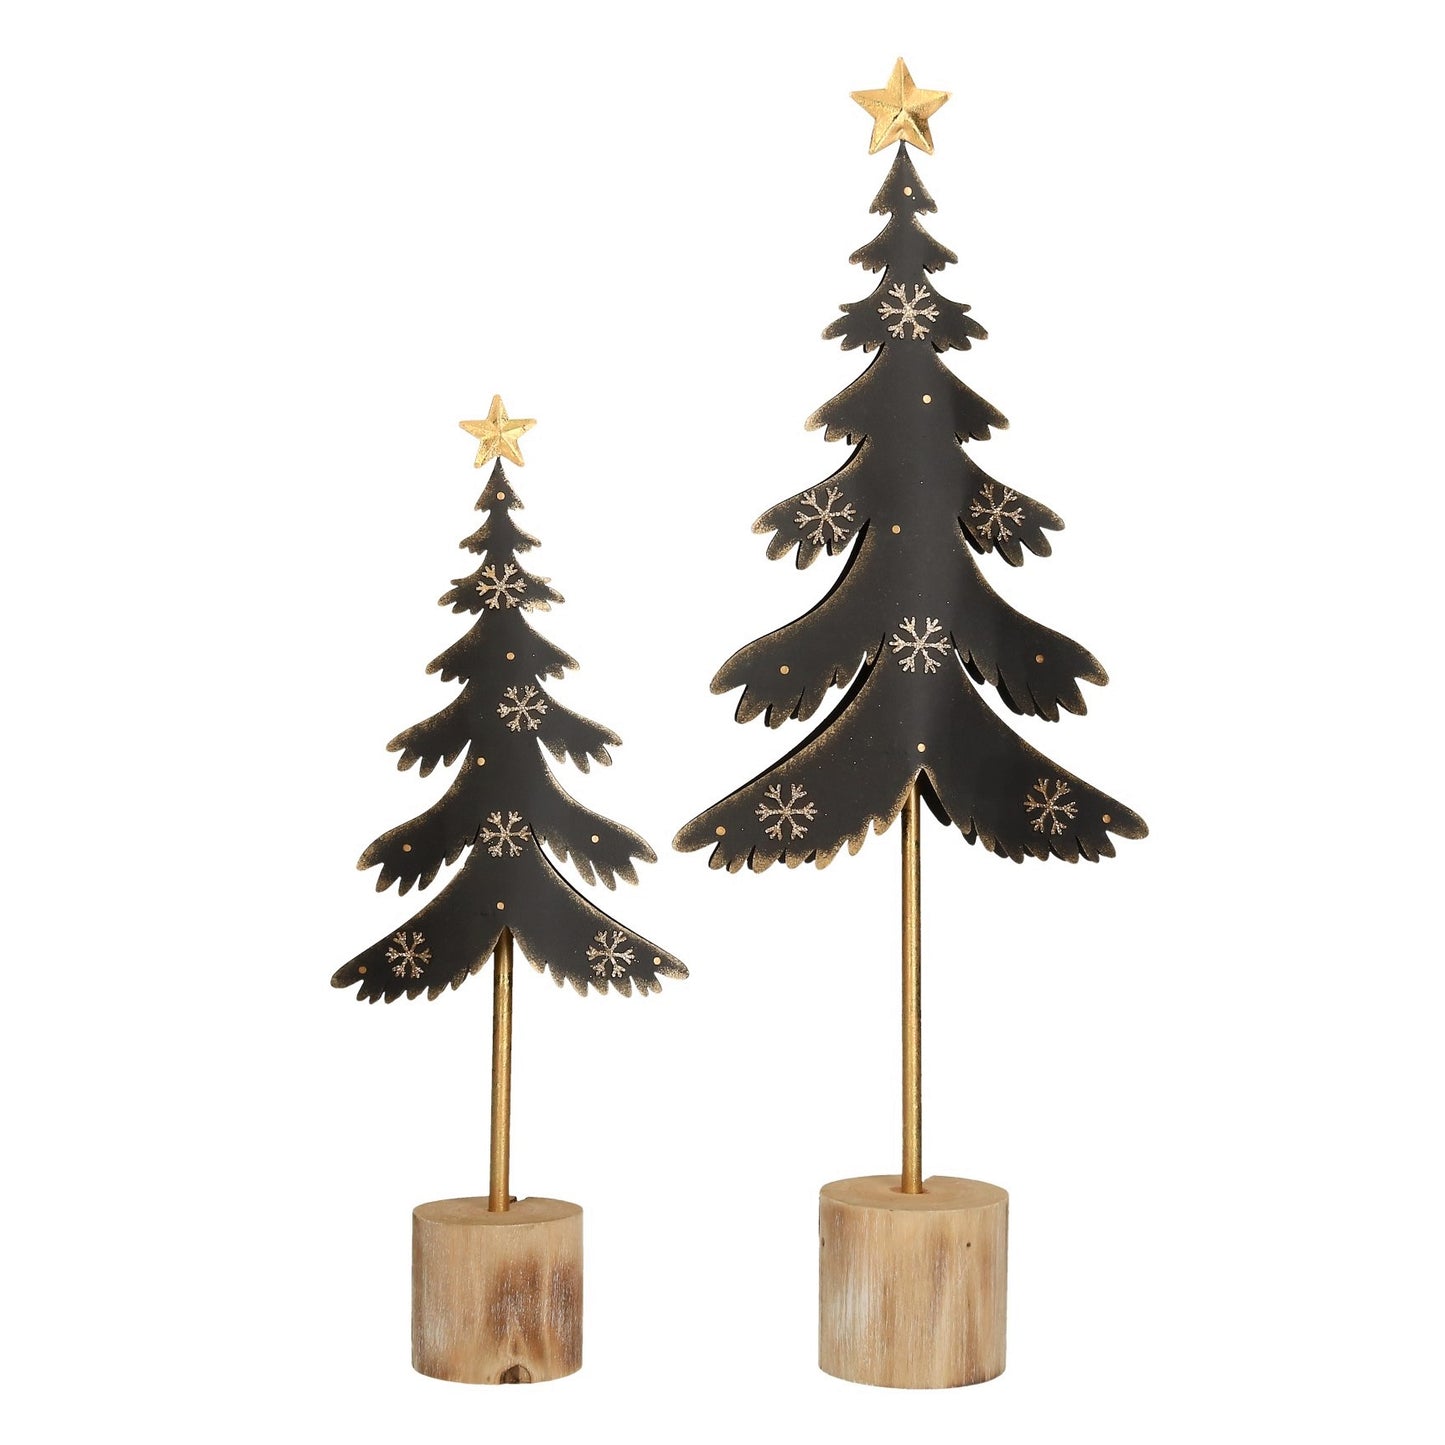 Figur Weihnachtsbaum schwarz/gold Metall 2 Größen